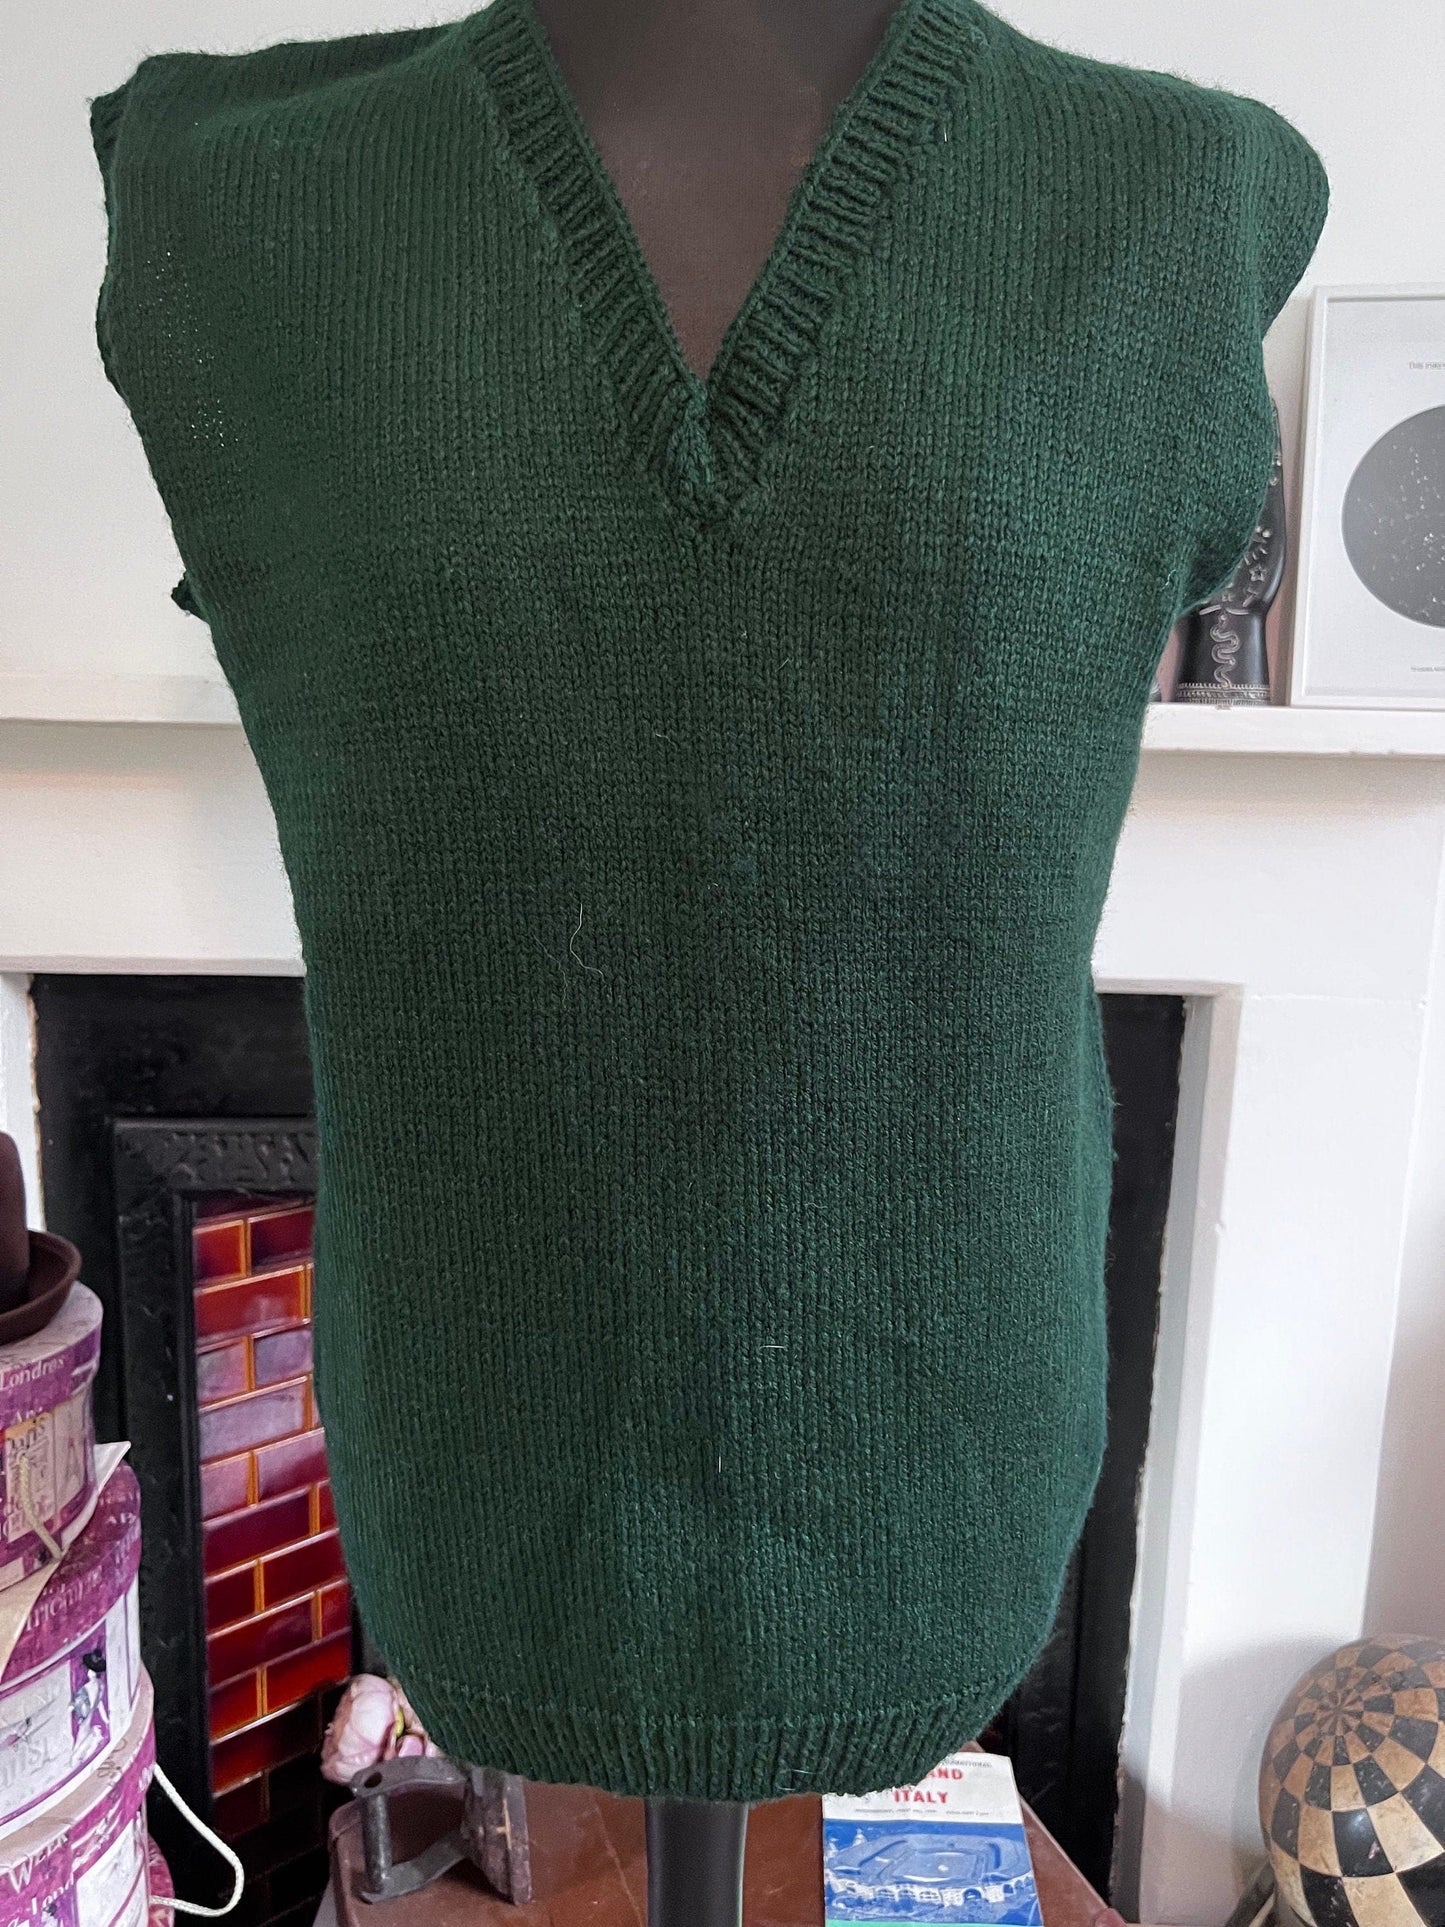 1940s Hand Knitted Green Jumper Sleeveless Green 40s Knitwear Jumper - mens Jumper, handmade wartime WW2 Knitwear, sleeveless vintage jumper